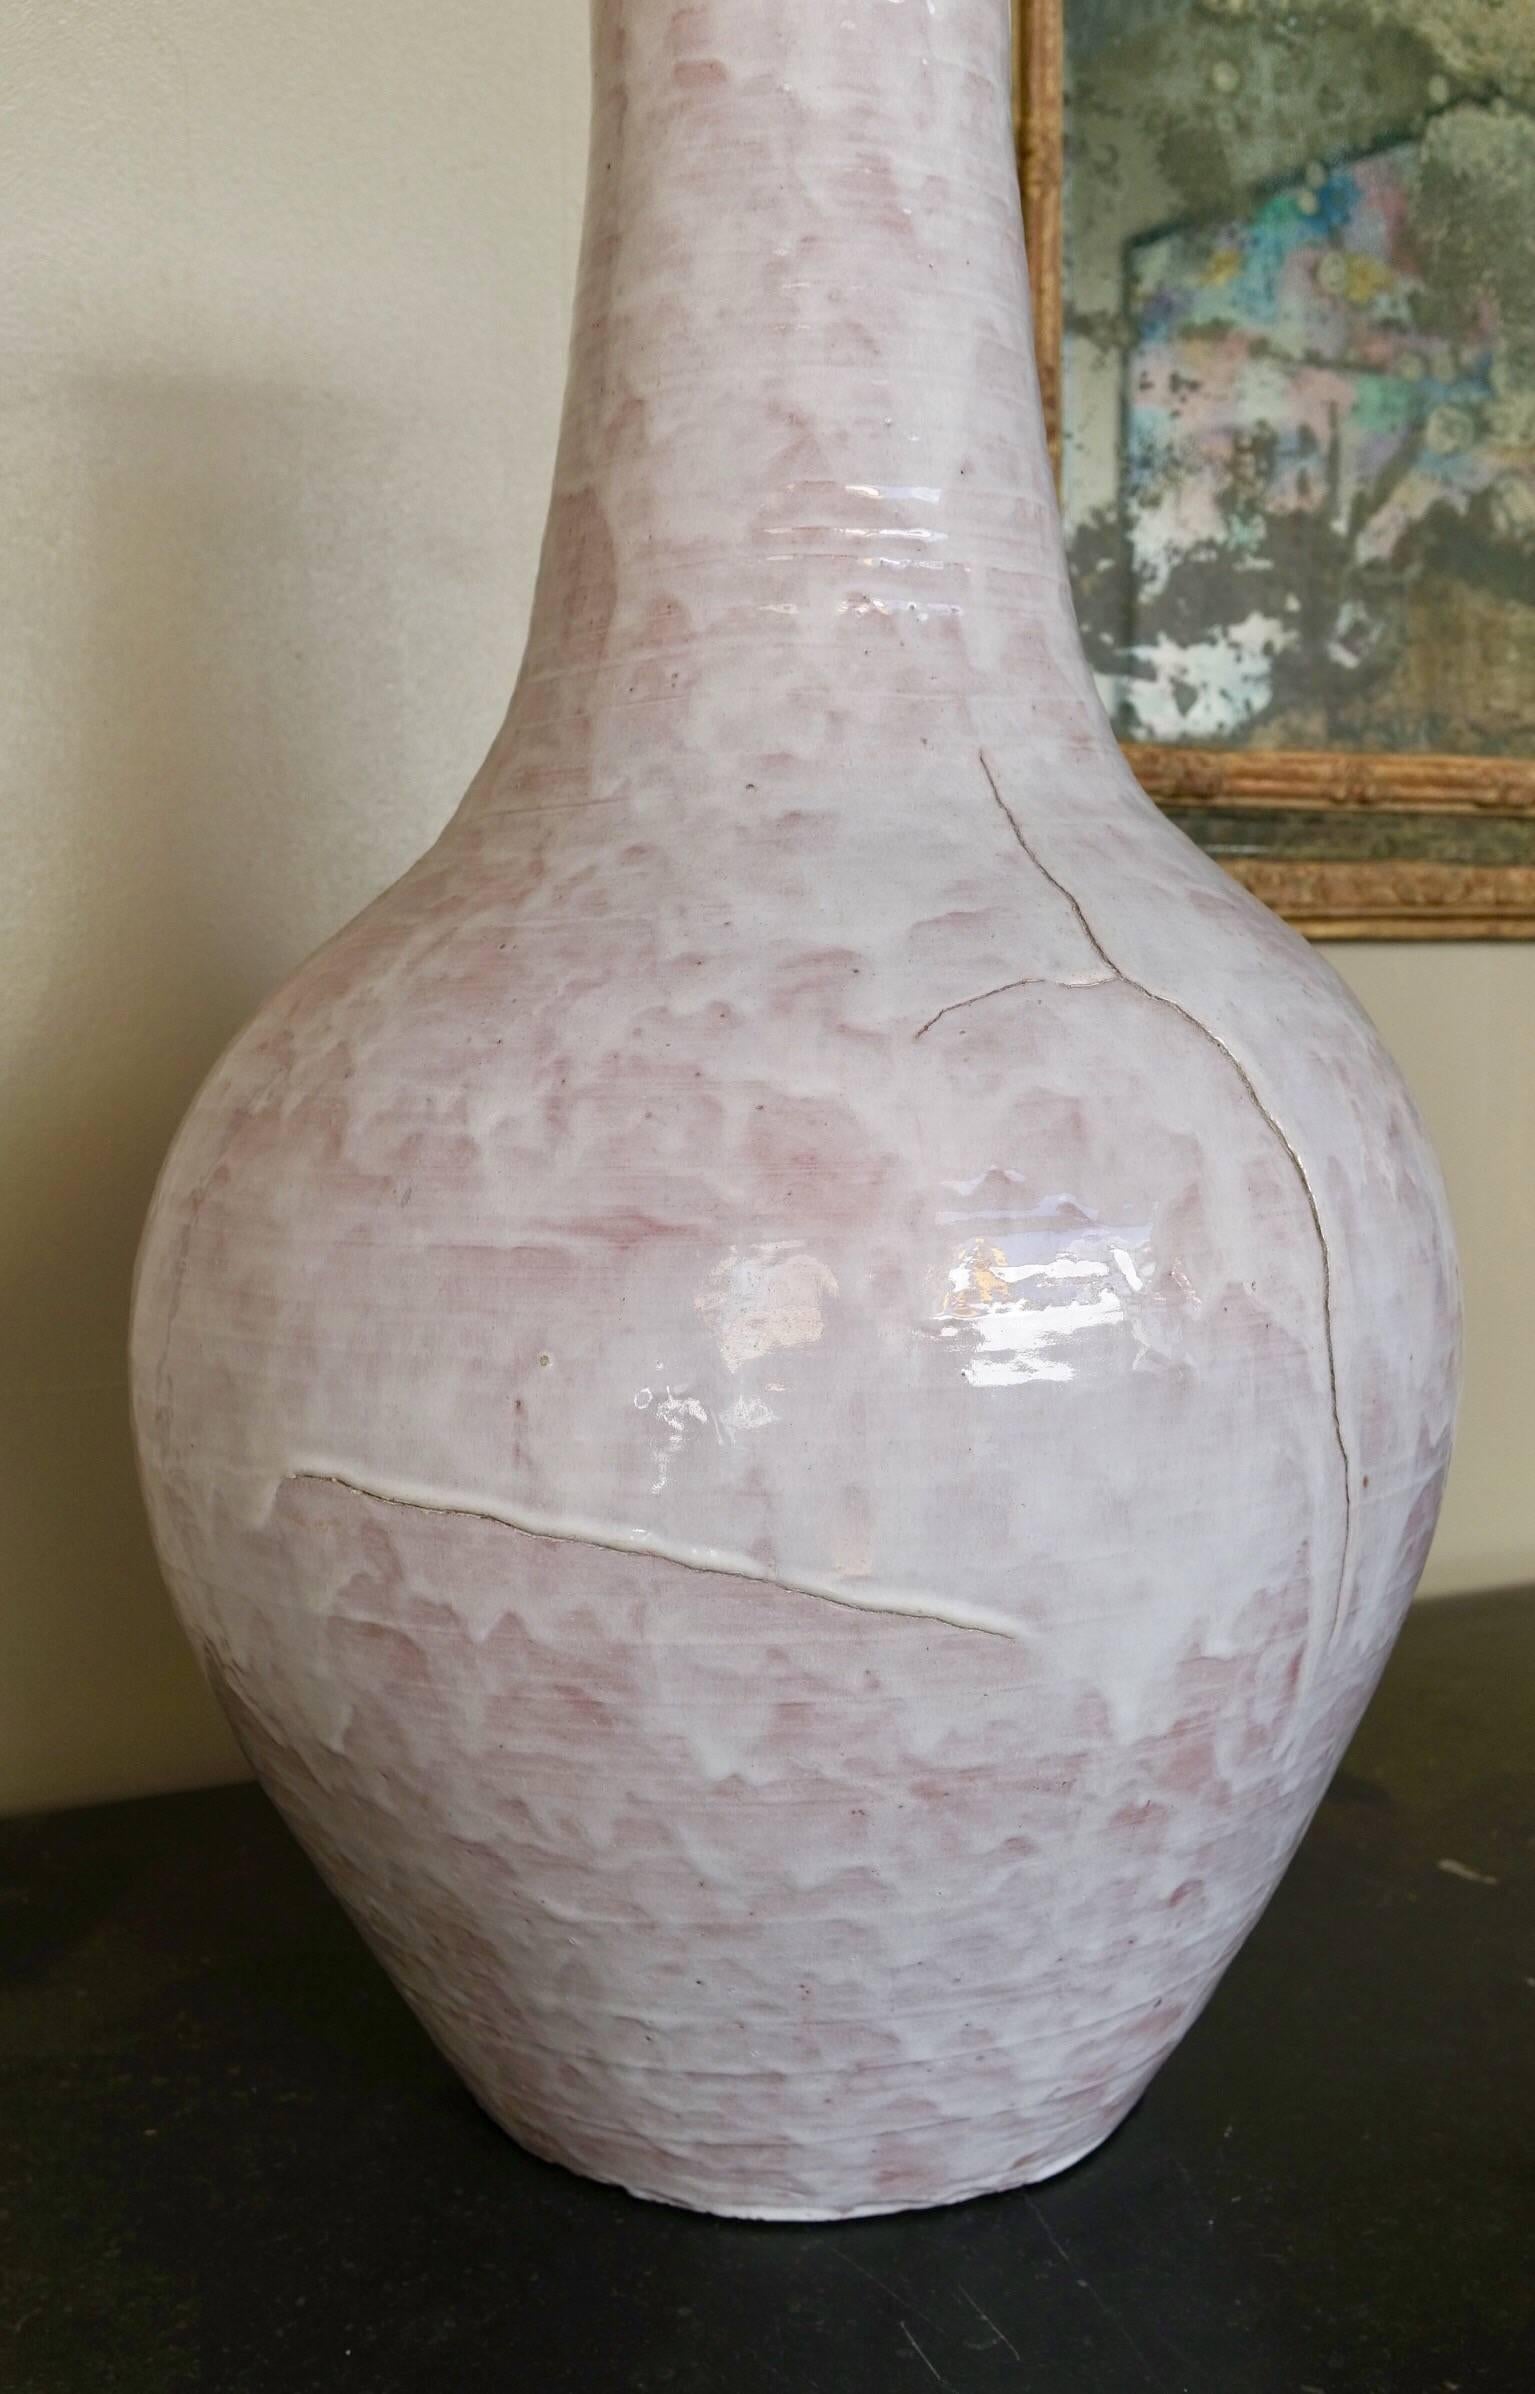 Large glazed white ceramic vase signed by Edouard Cazaux, late 1960.
Signed 